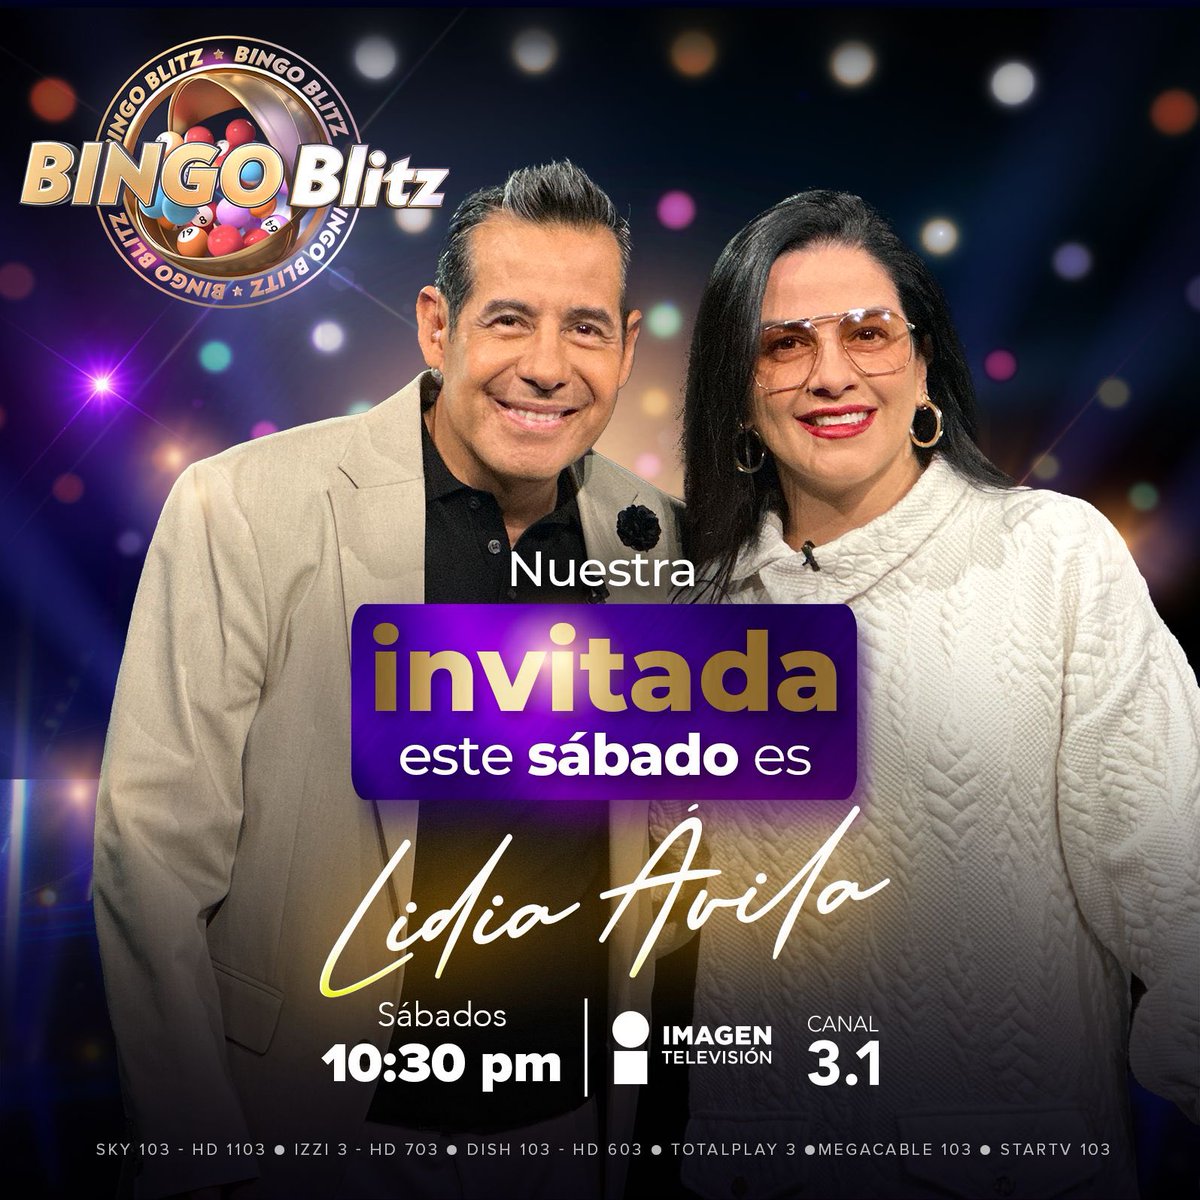 No te puedes perder a @LidiaAvila este sábado en #BingoBlitz junto a @YordiRosado solo por @ImagenTVMex 🤩 Te esperamos 10:30 pm en el 3.1 #BingoConYordiRosado